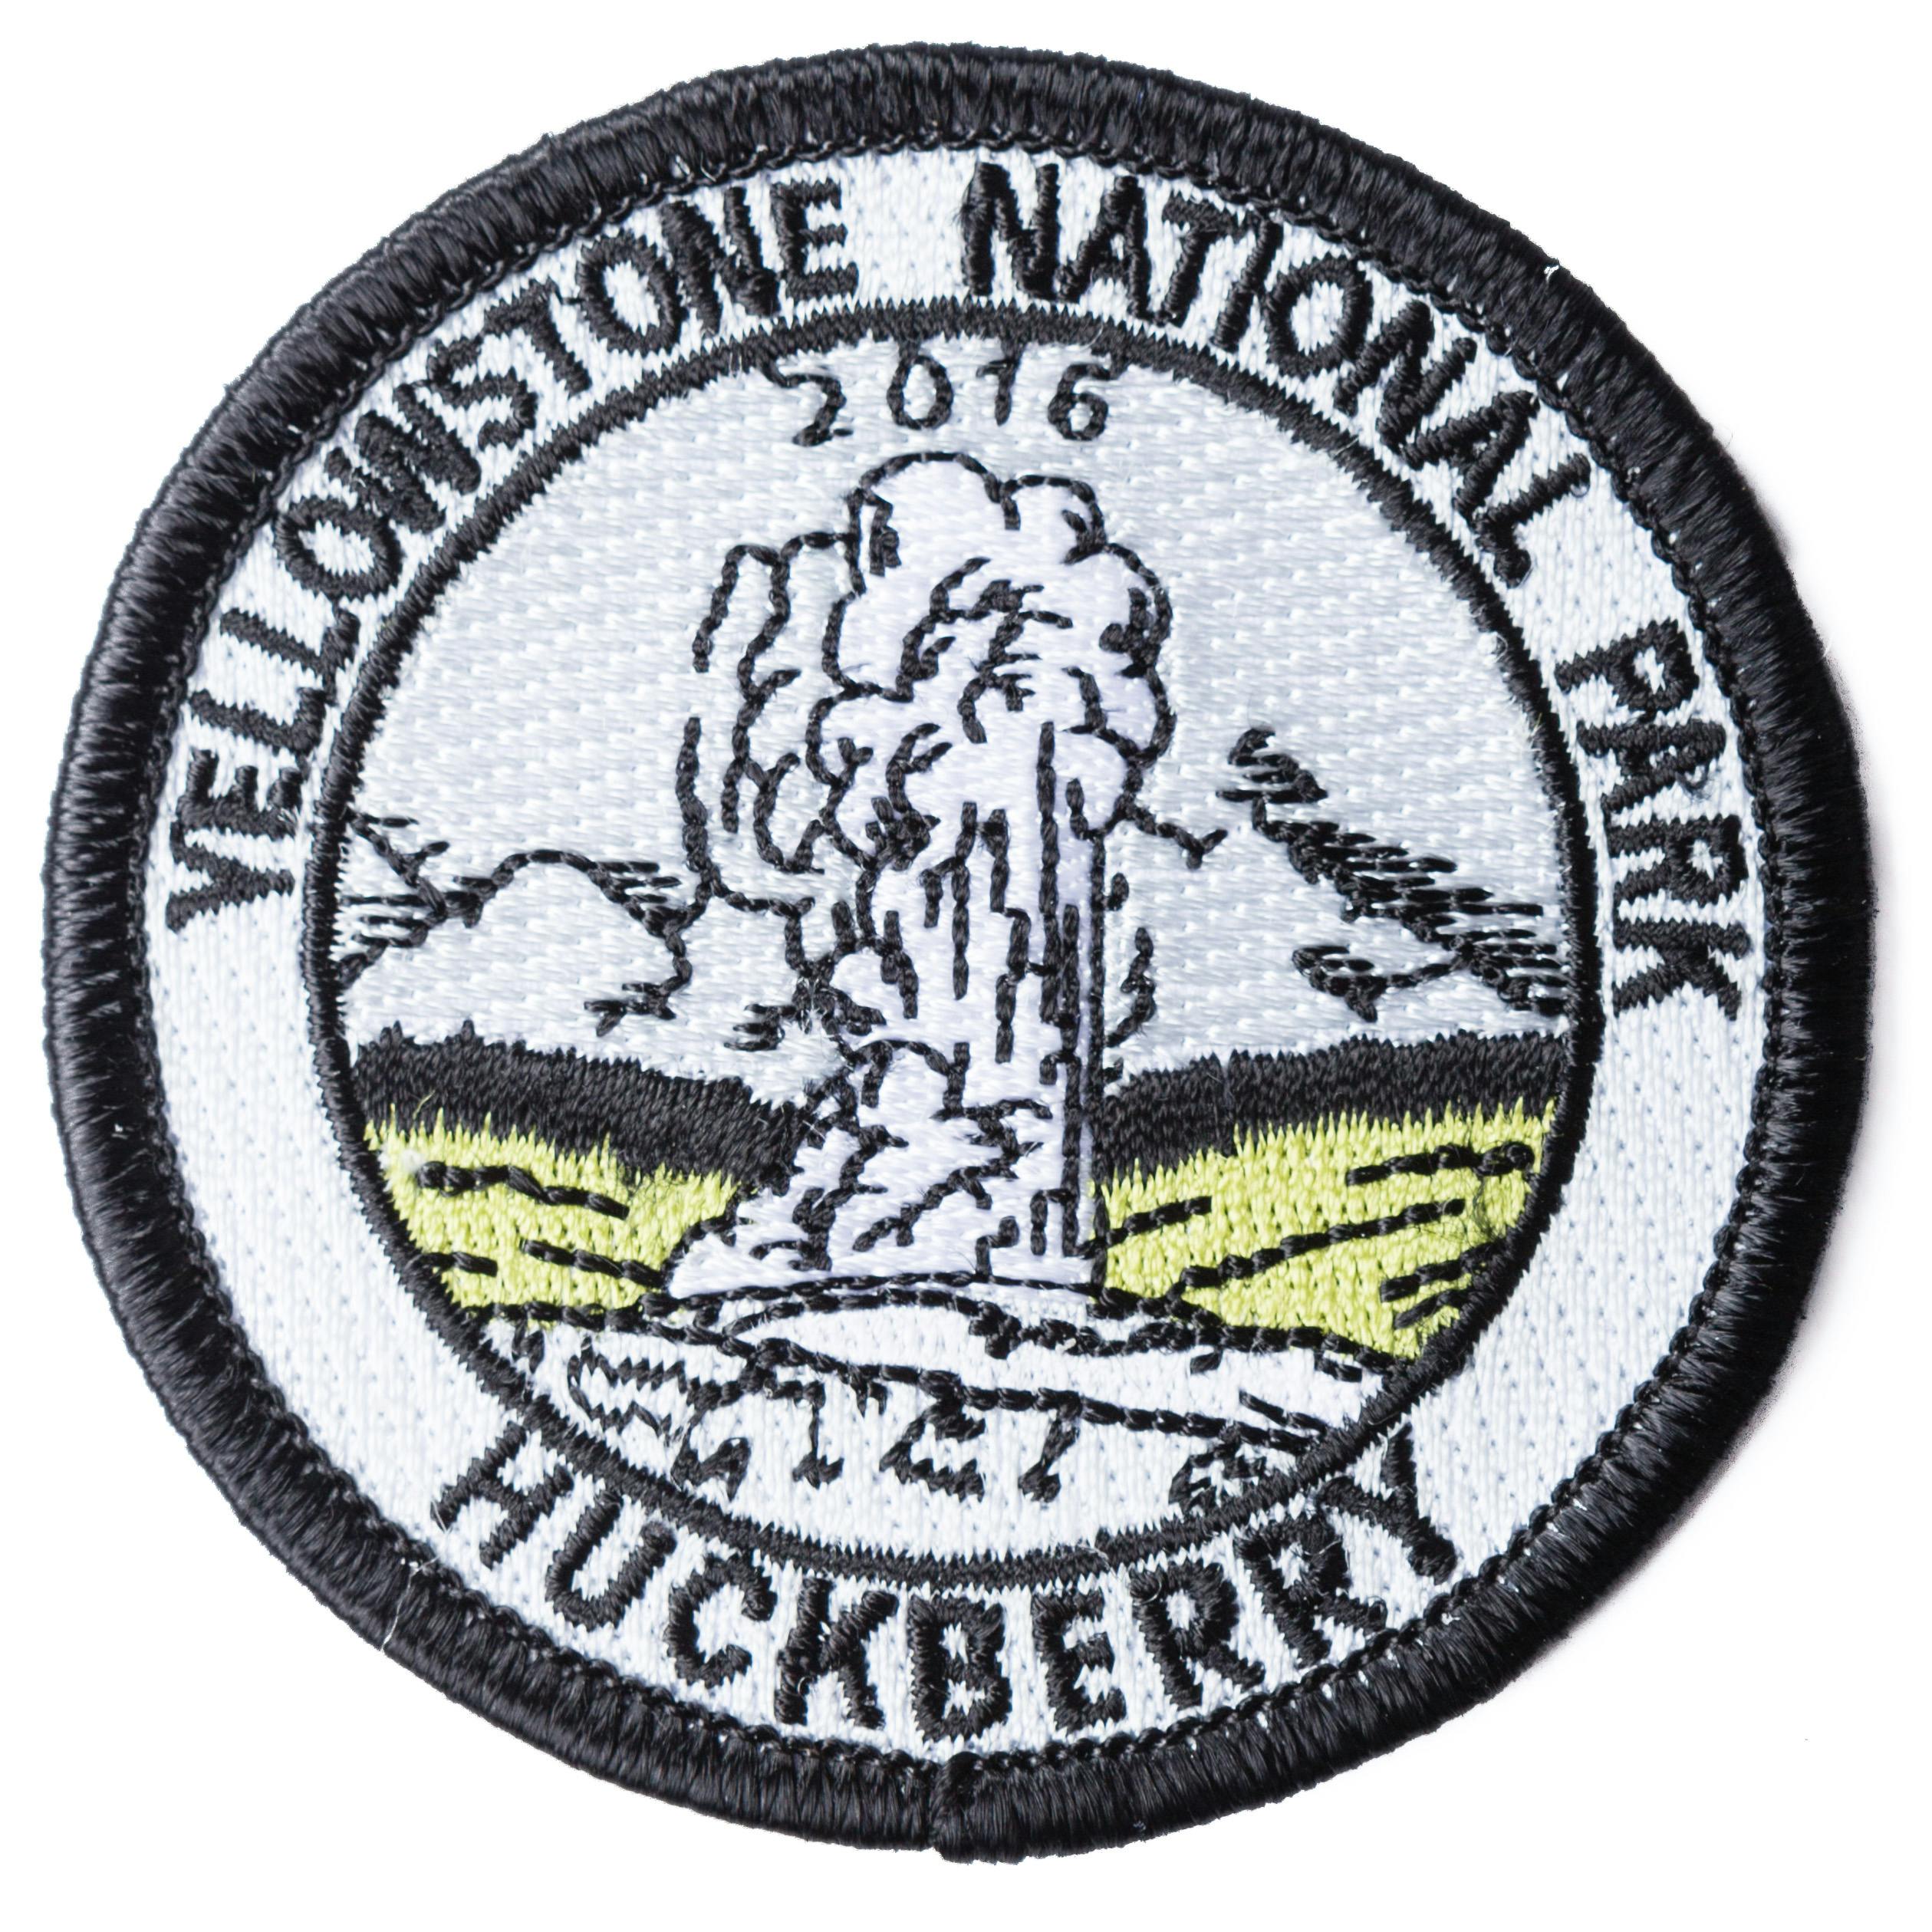 Huckberry National Parks Patch Set